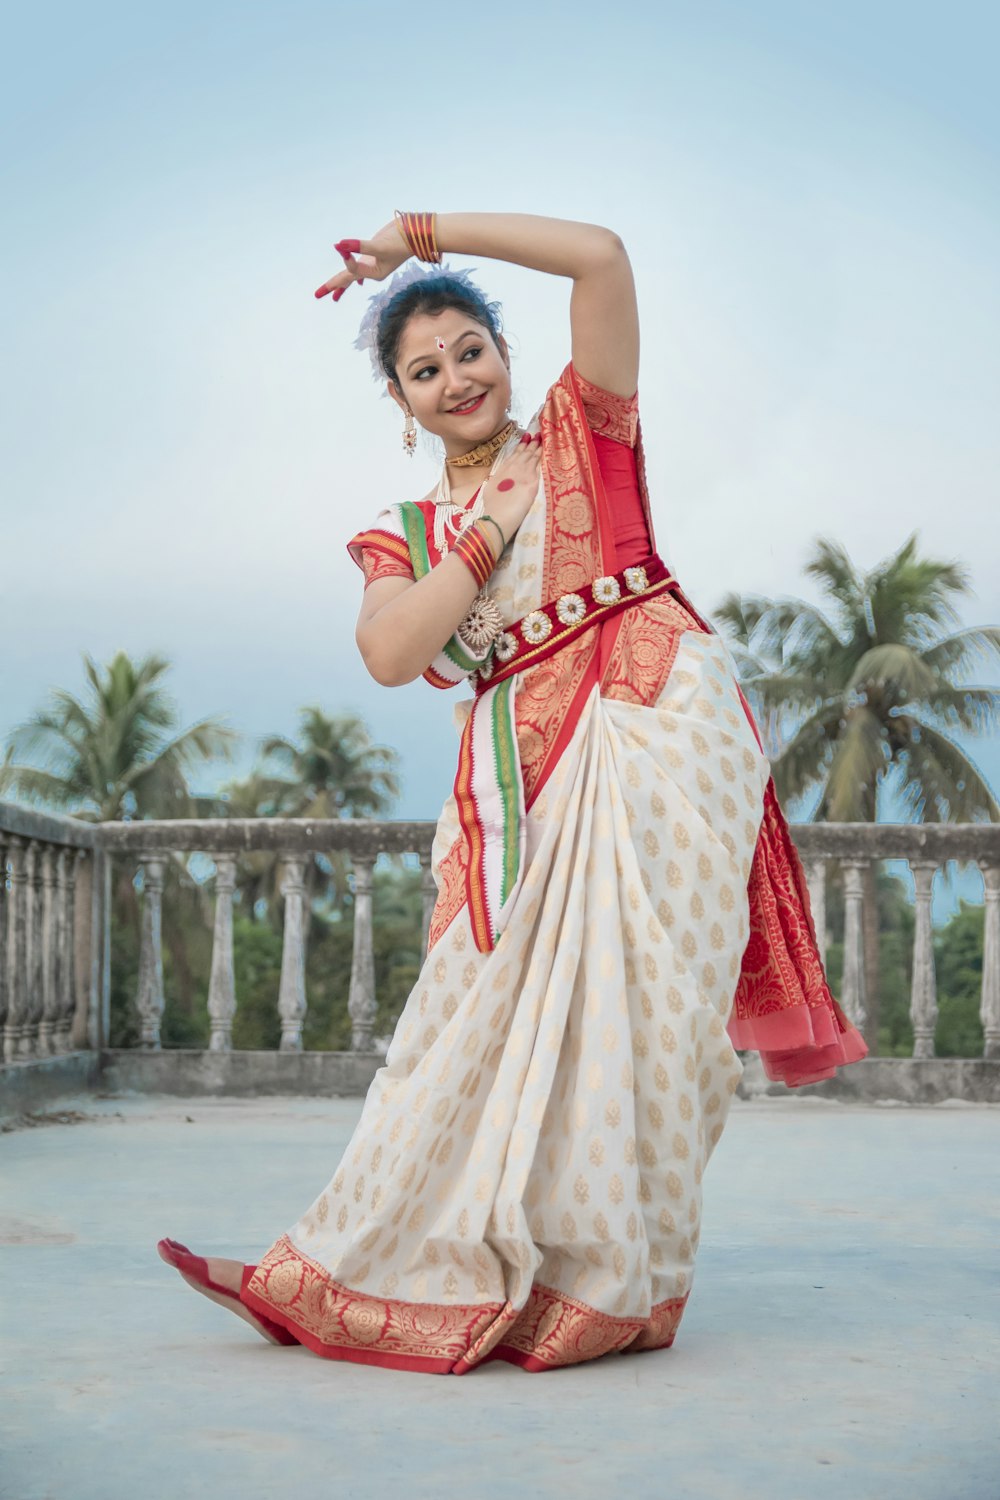 Femme en sari rouge et blanc debout sur un sol en béton gris pendant la journée